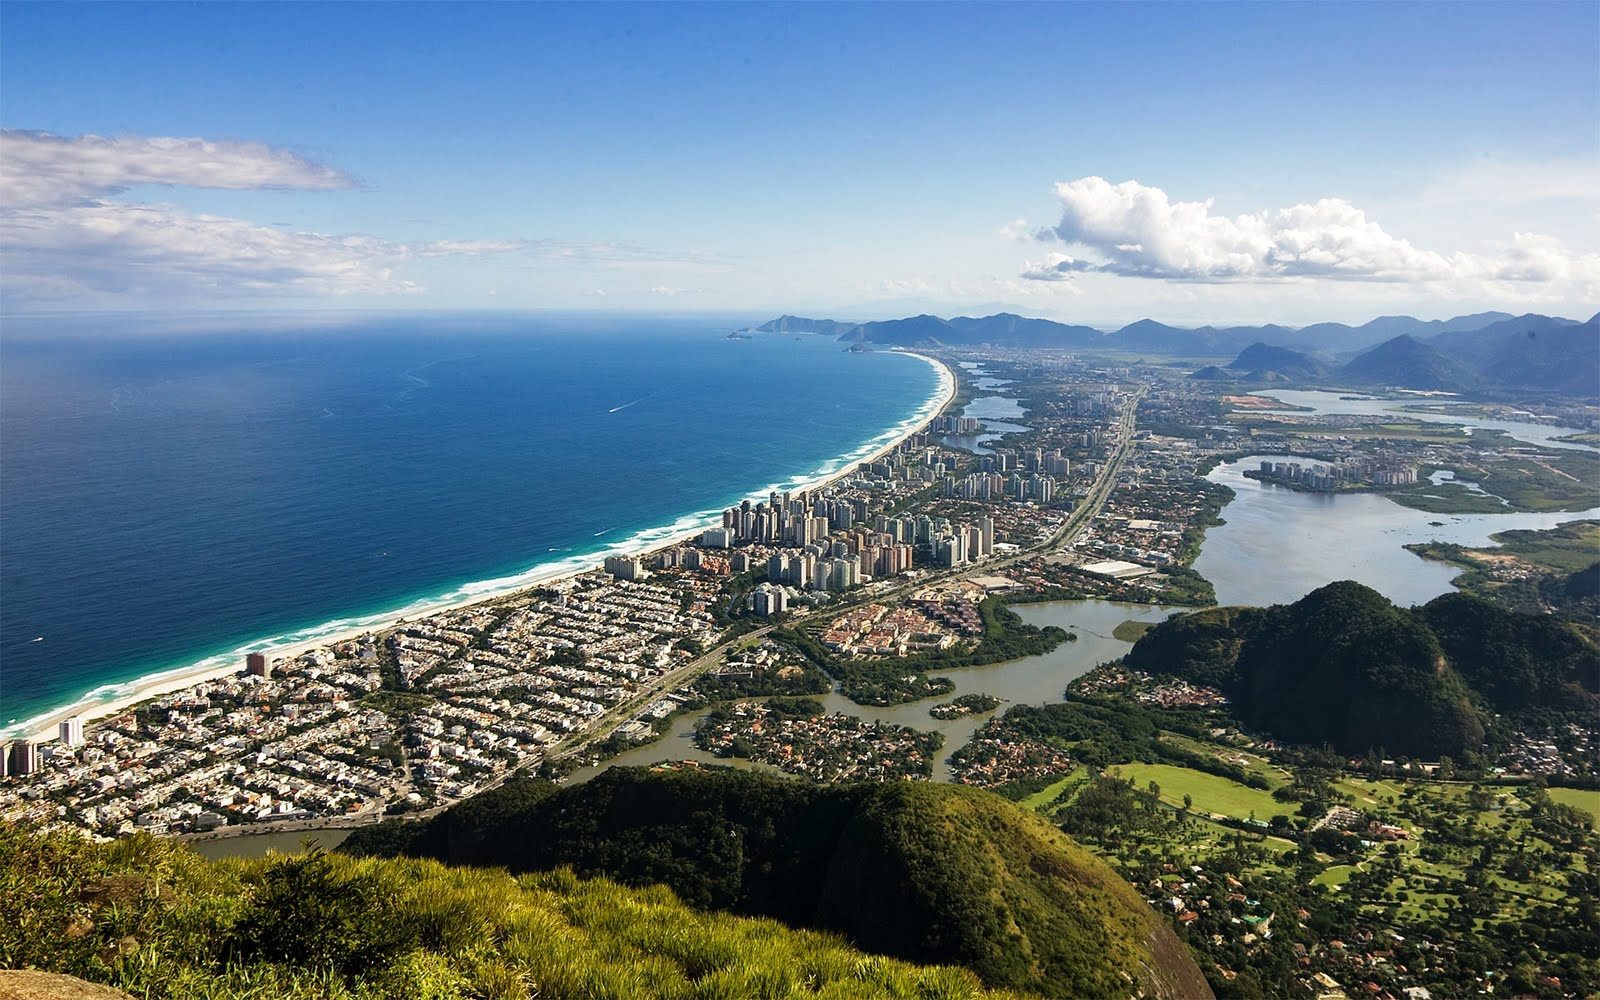 Zona Oeste do Rio de Janeiro: imagem da barra da tijuca vista do alto da pedra da gávea